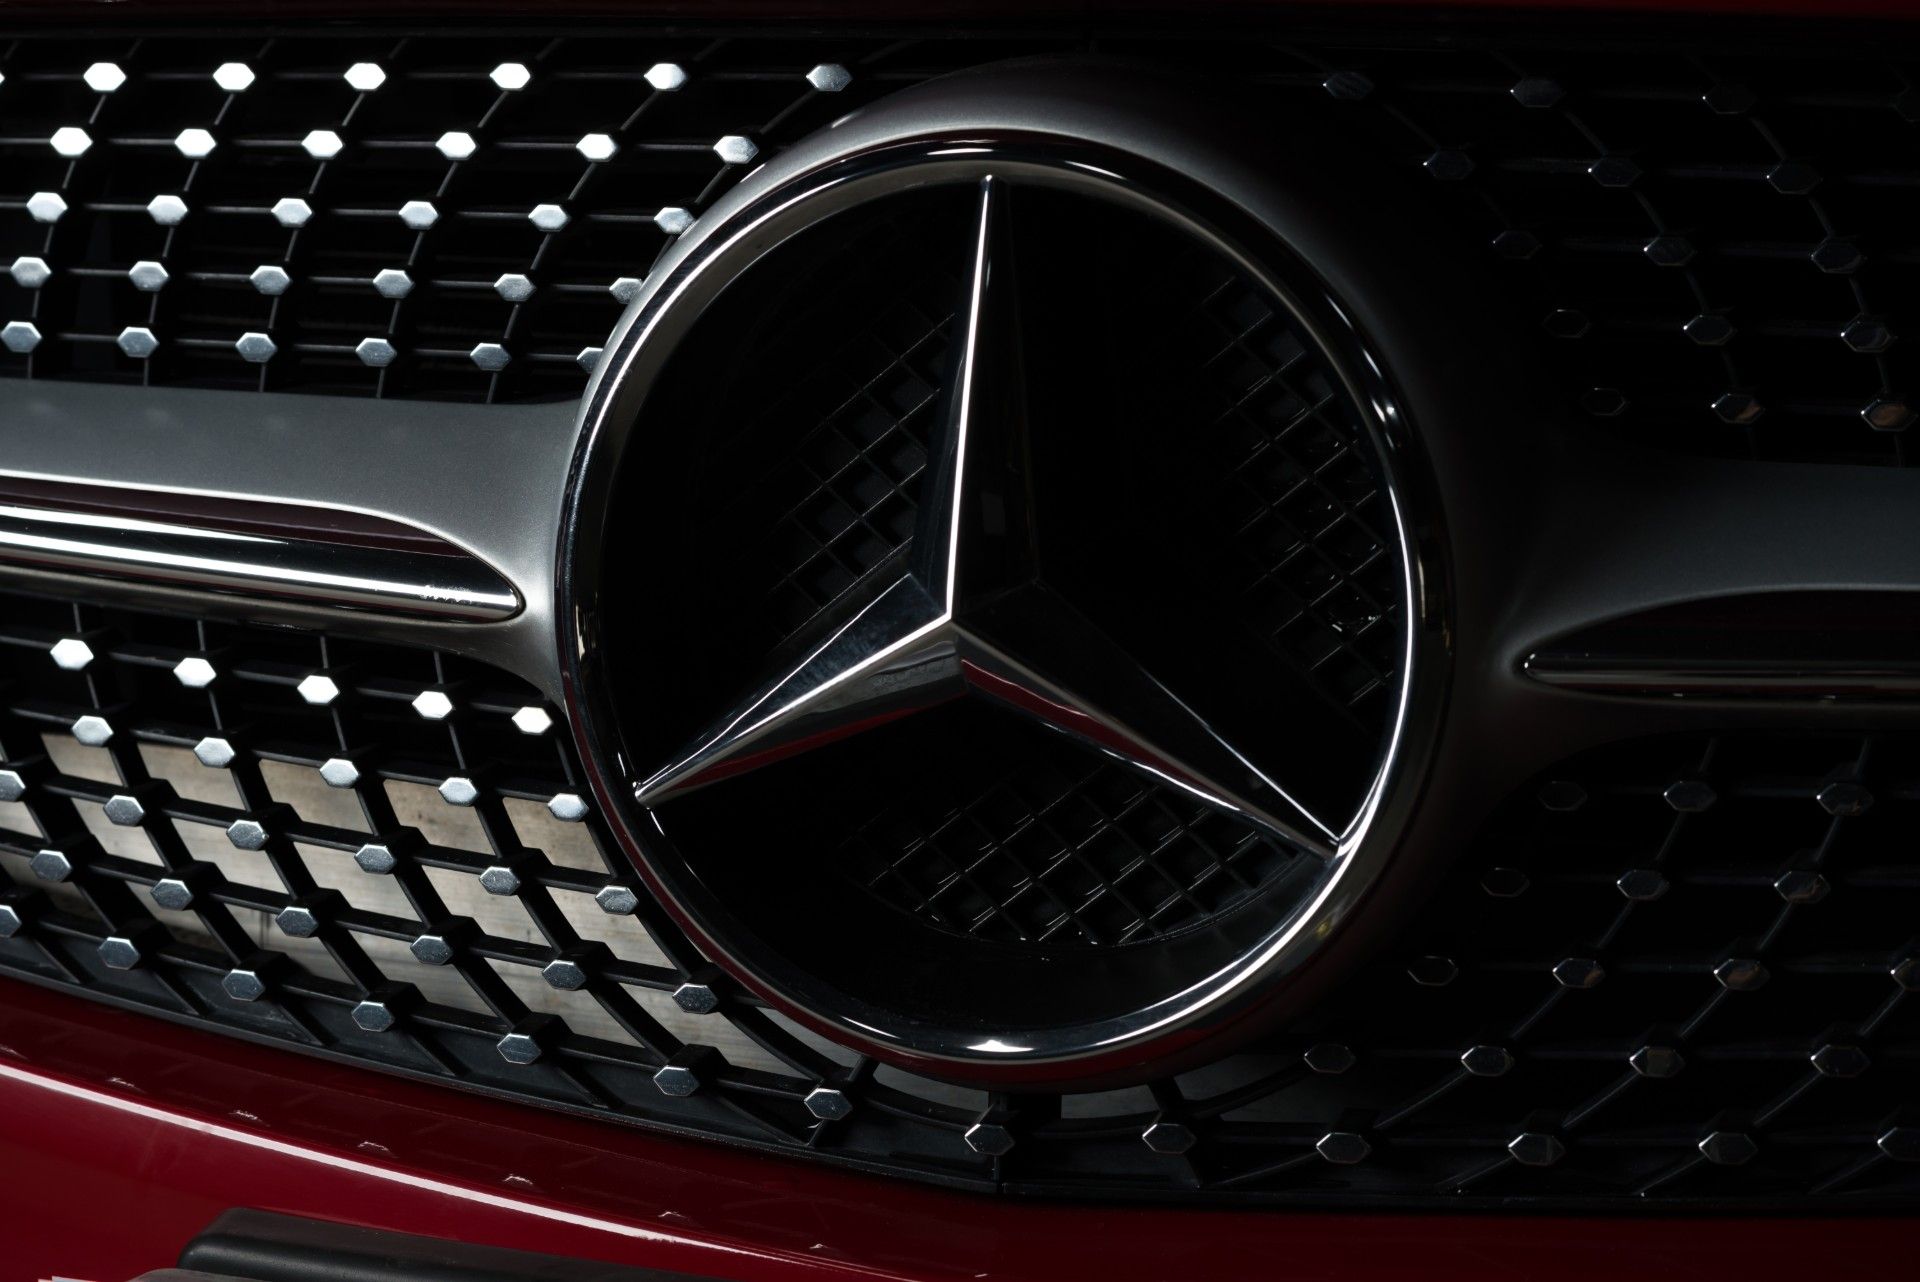 Mercedes-Benz grille on red car - emissions scandal